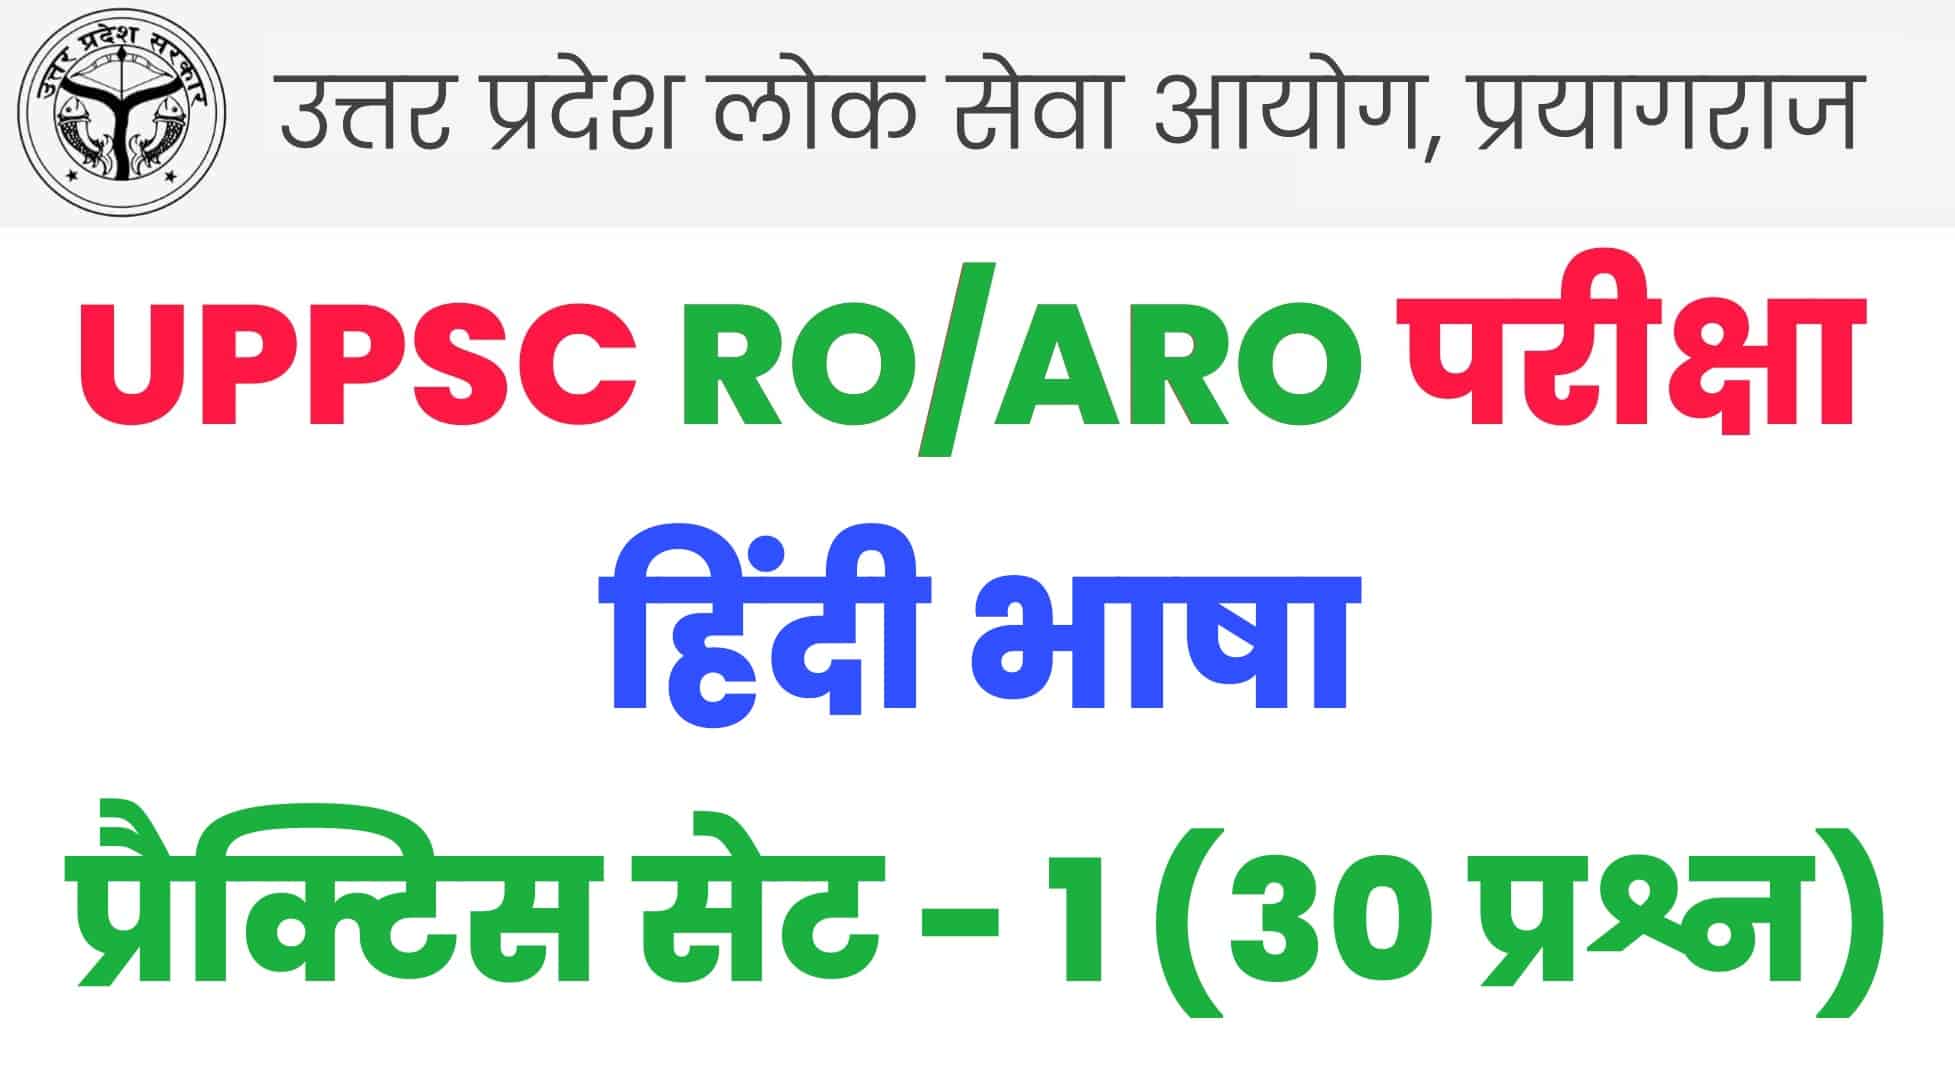 UPPSC RO/ARO हिंदी भाषा प्रैक्टिस सेट : परीक्षा में पूछे जा सकते हैं ये 30 महत्वपूर्ण प्रश्न, जरुर देखें